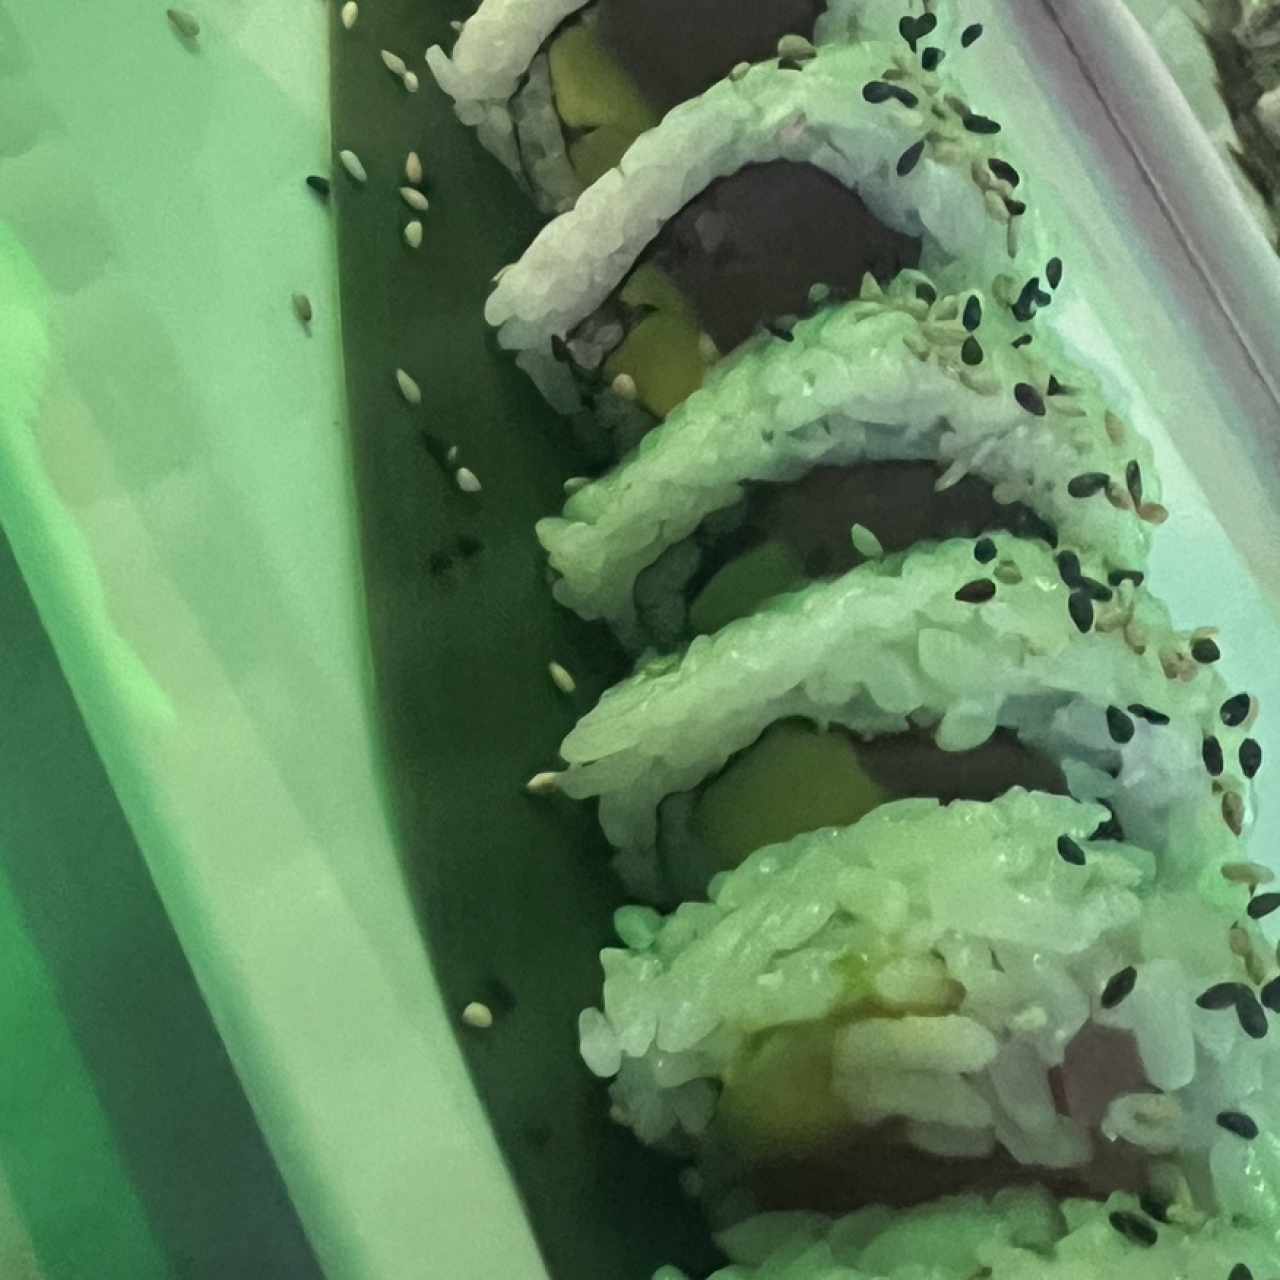 Sushi Rolls - Alaska